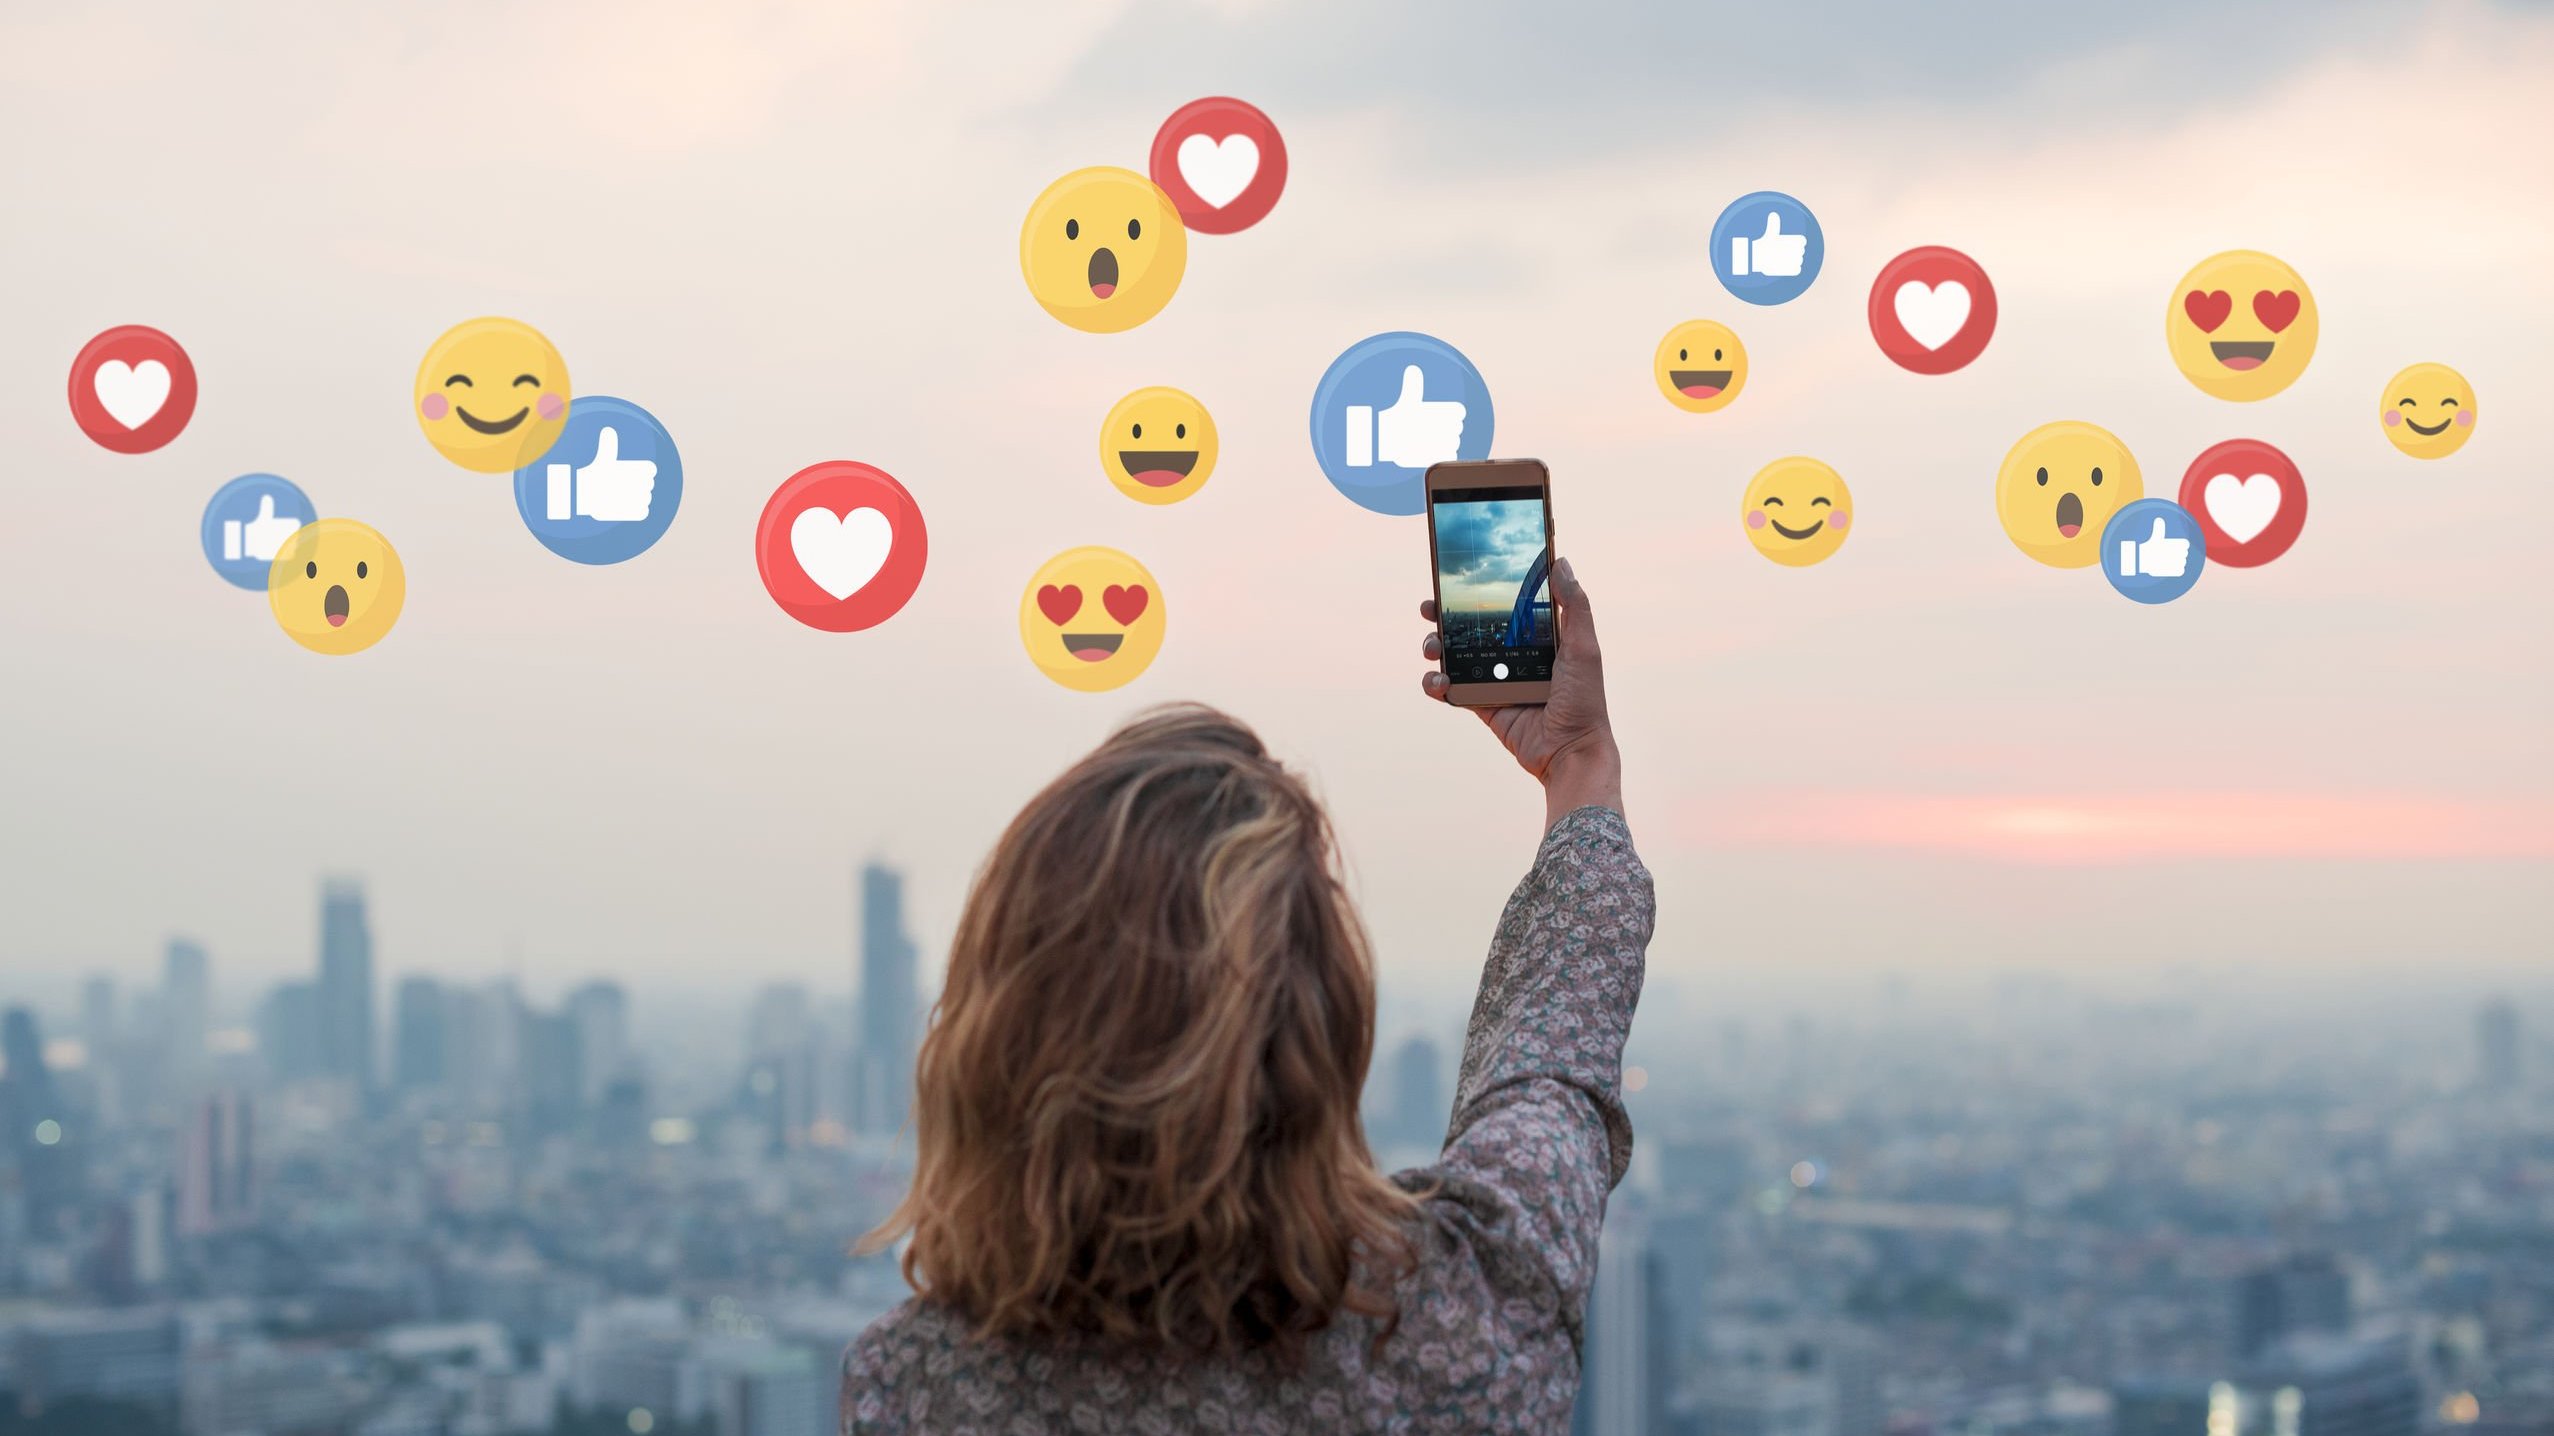 Mulher tirando selfie em meio à paisagem urbana com pôr do sol e vários emojis de reações do Facebook.